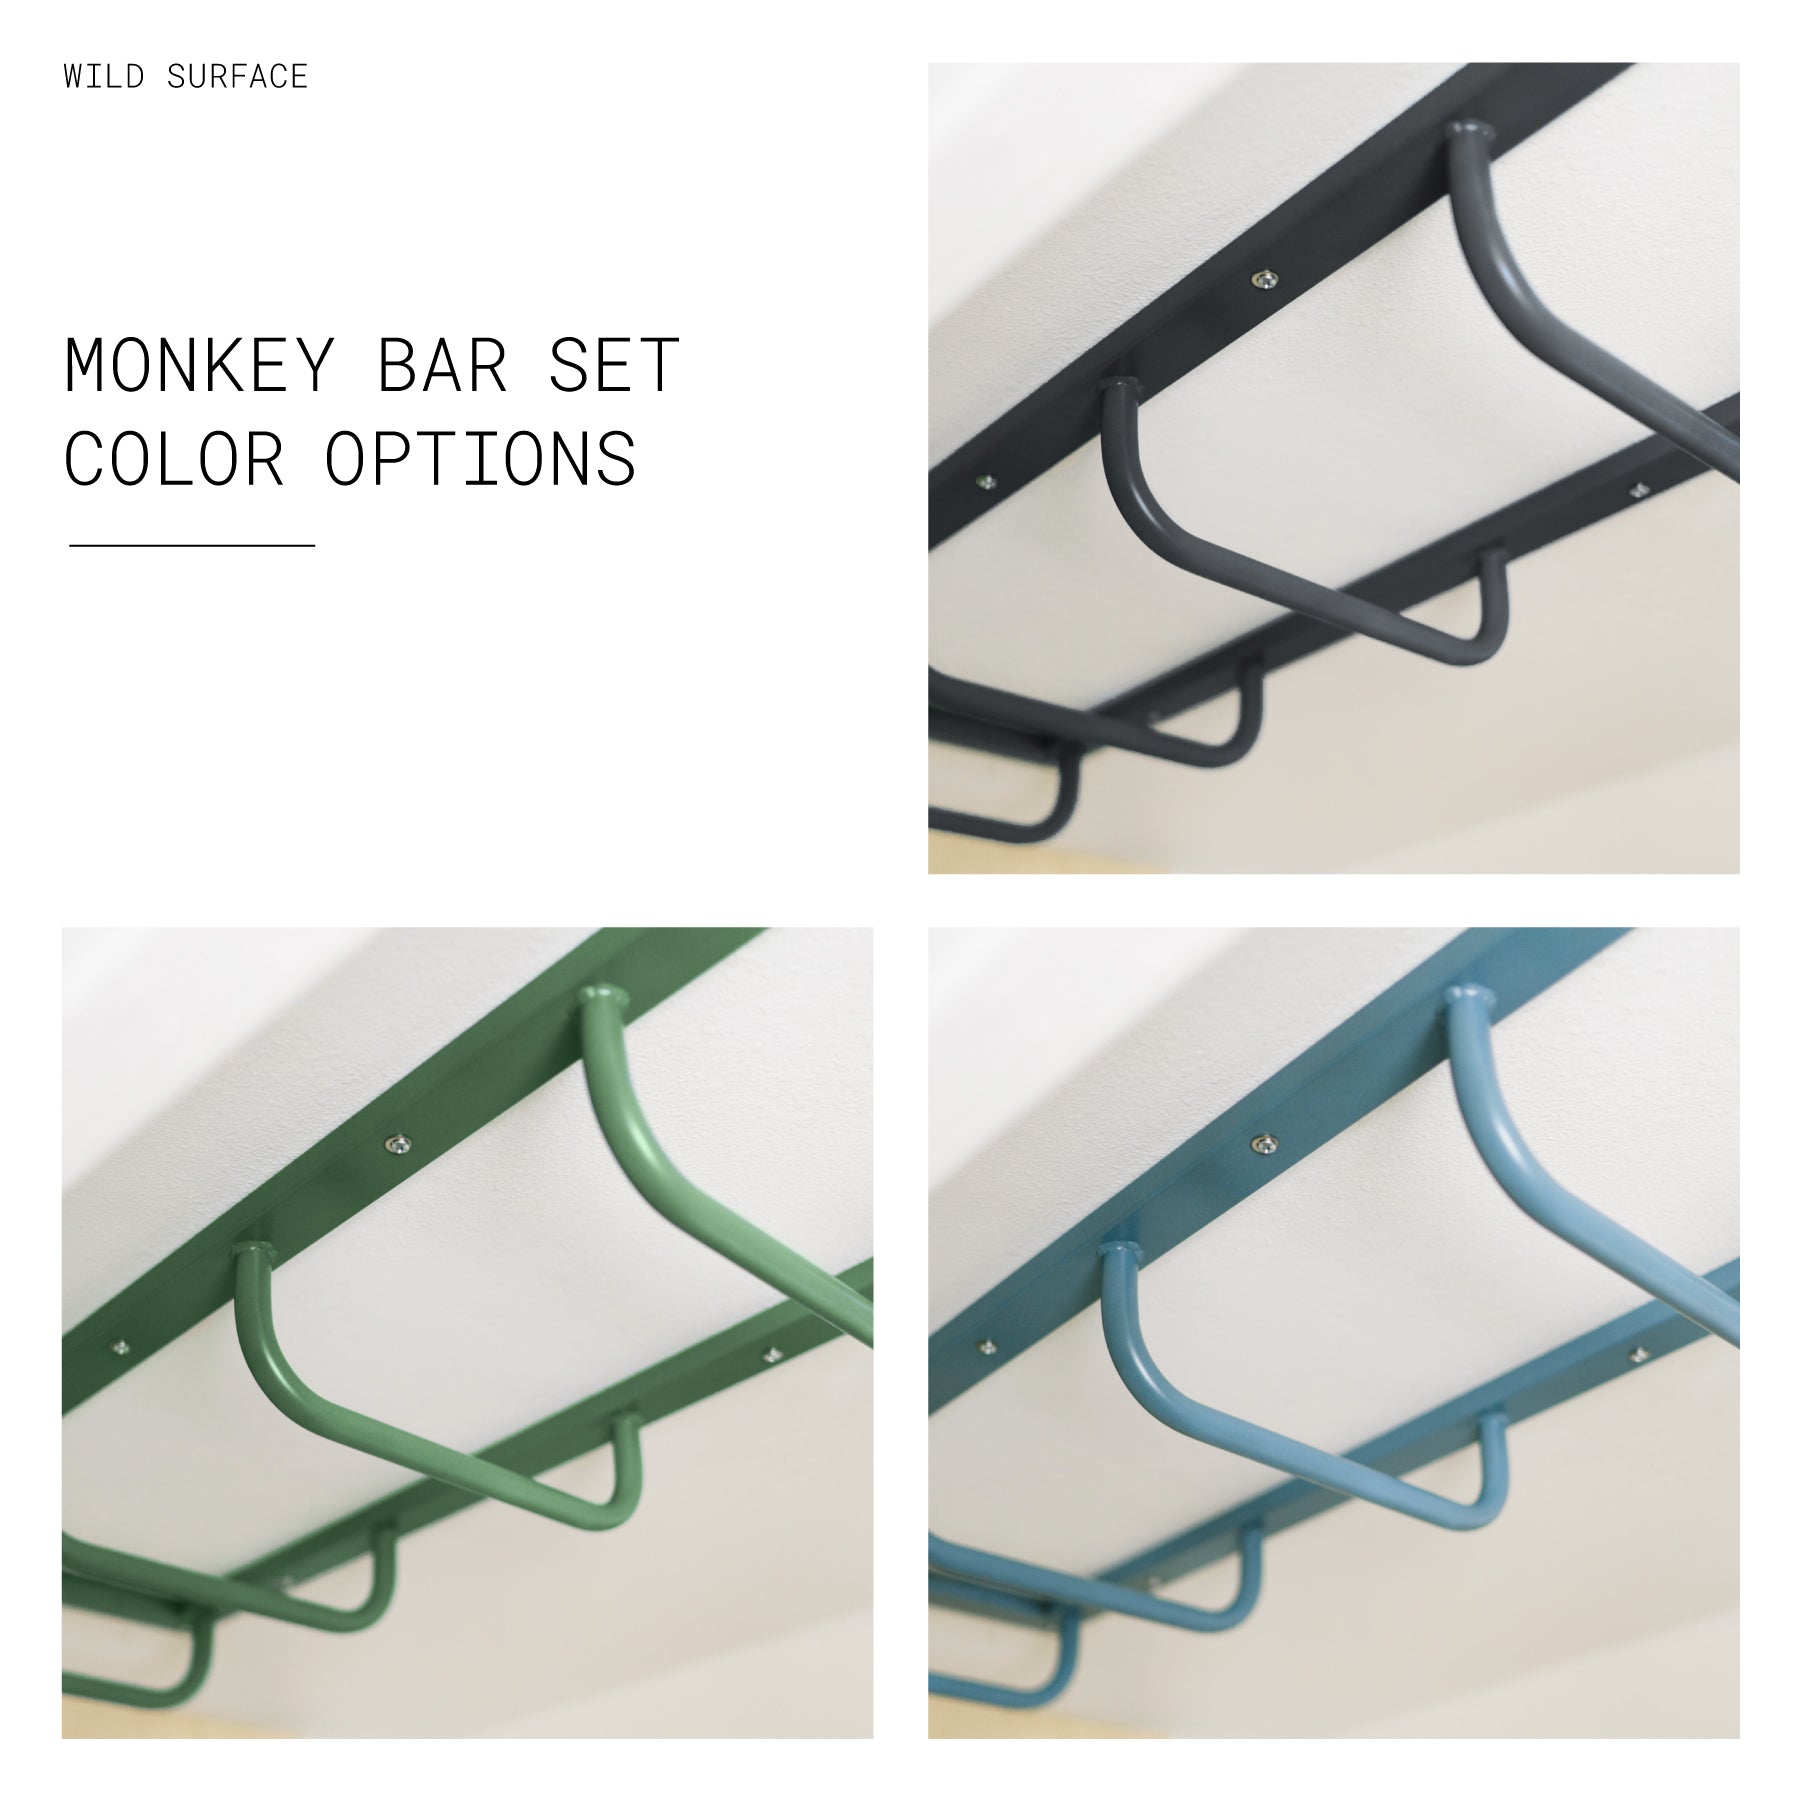 Monkey Bar 6 Rung 30 Wide - Universal (4x4)